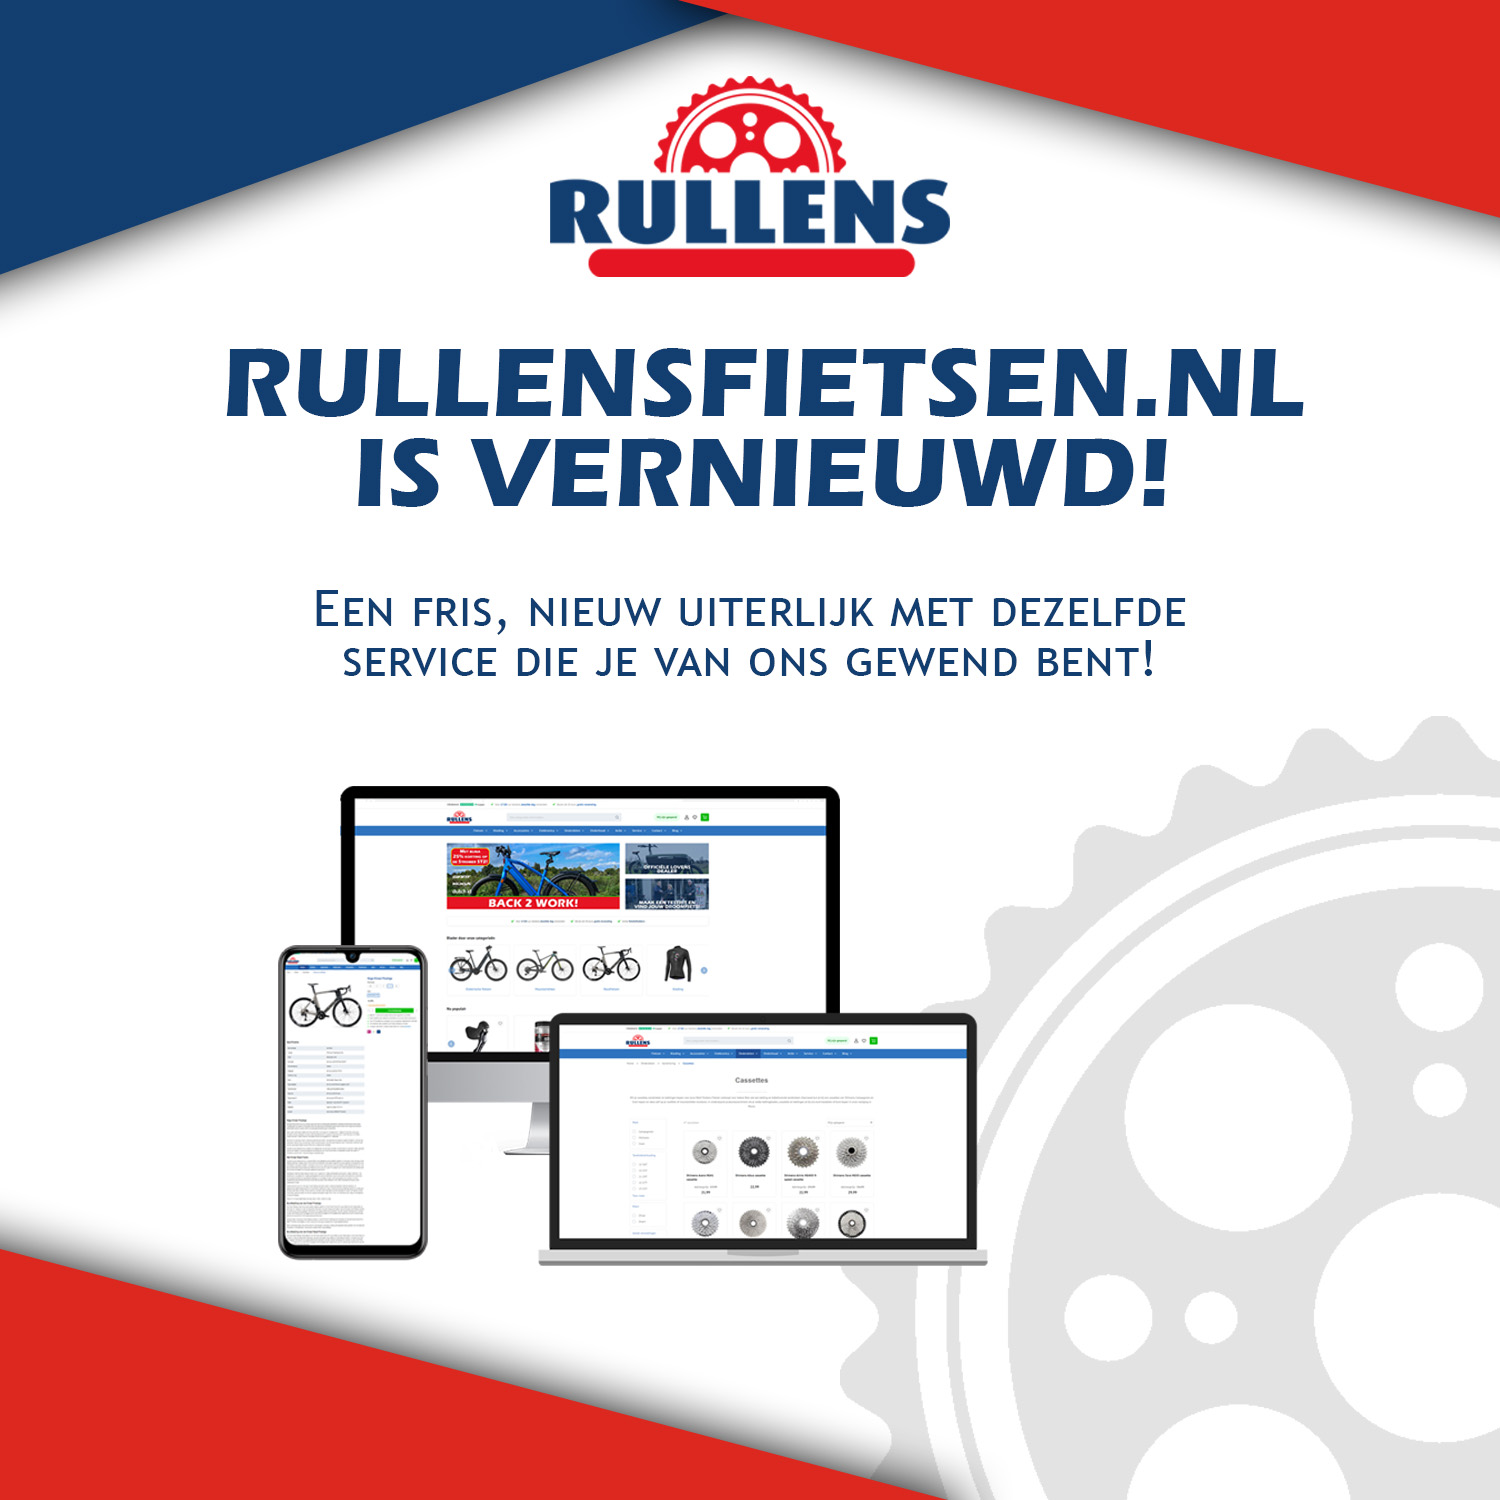 Welkom op de vernieuwde rullensfietsen.nl!